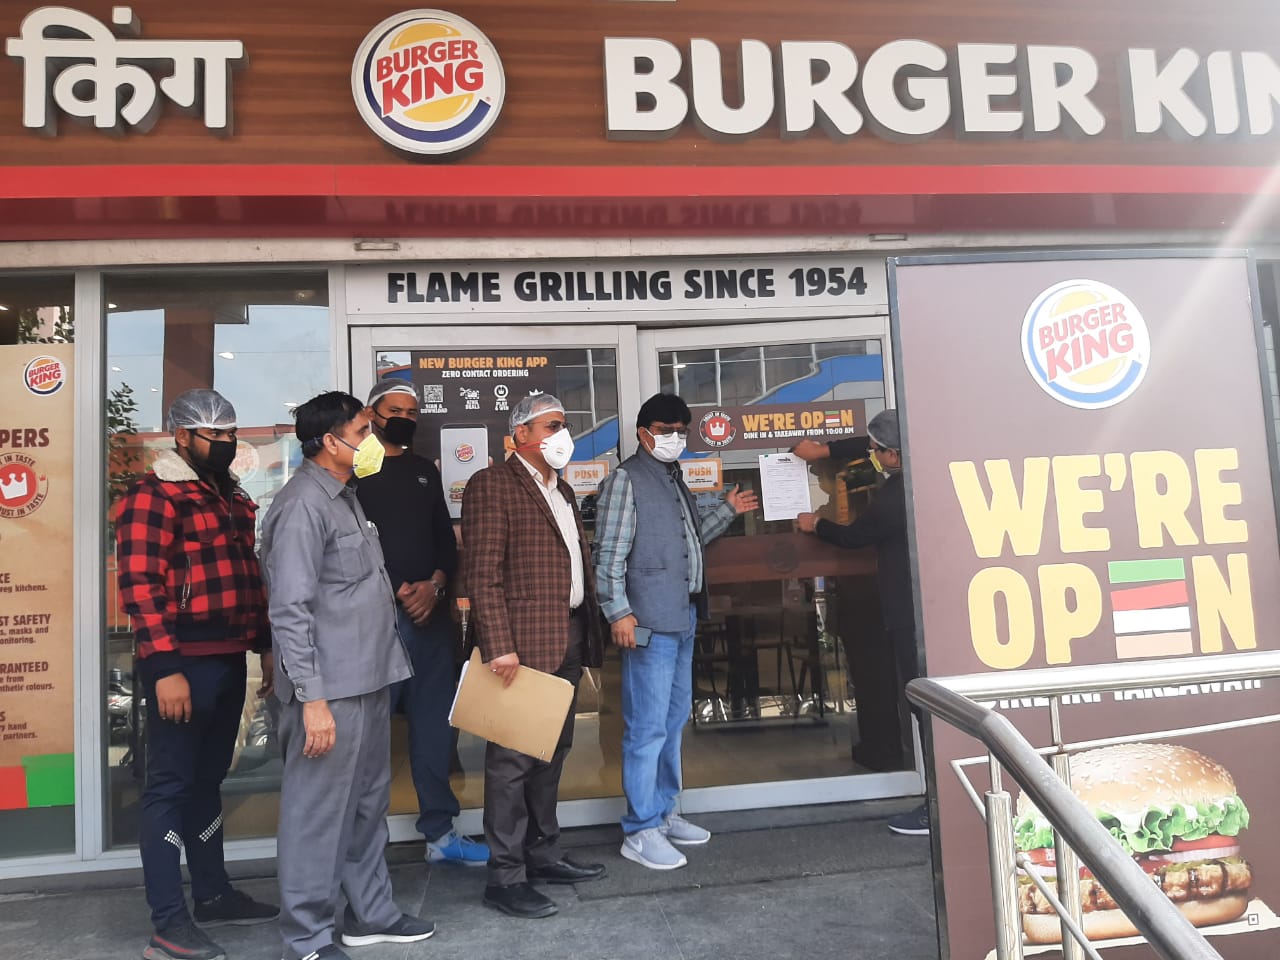 प्राधिकरण ने बर्गर किंग पर लगाया एक लाख का जुर्माना